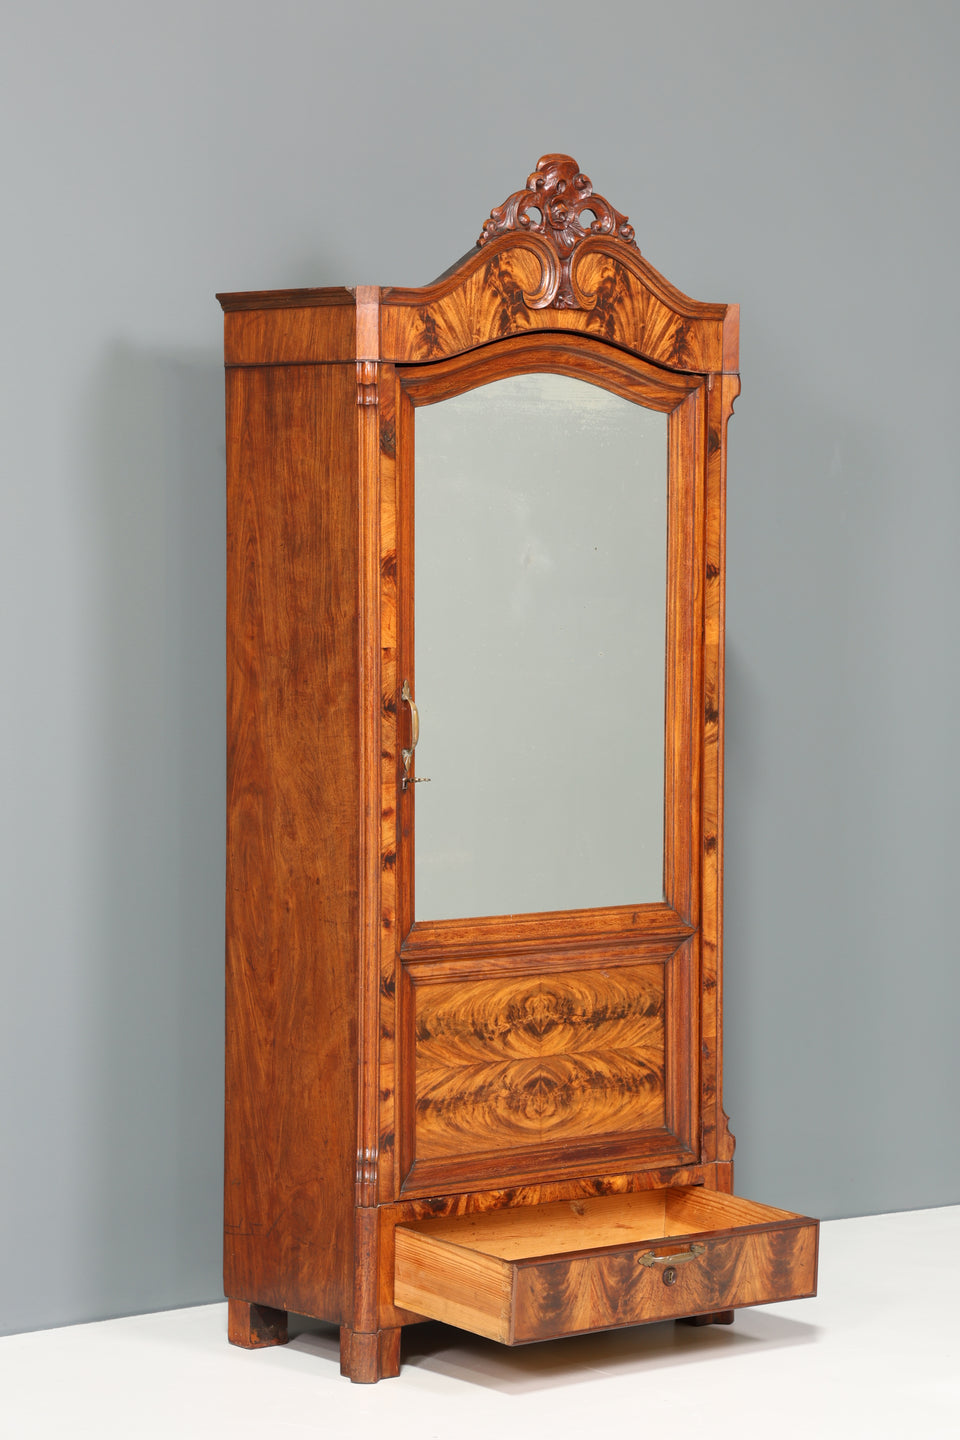 Stilvoller Louis Philippe Schrank um 1880 Spiegelschrank Gründerzeit Kleiderschrank Antik Wäscheschrank